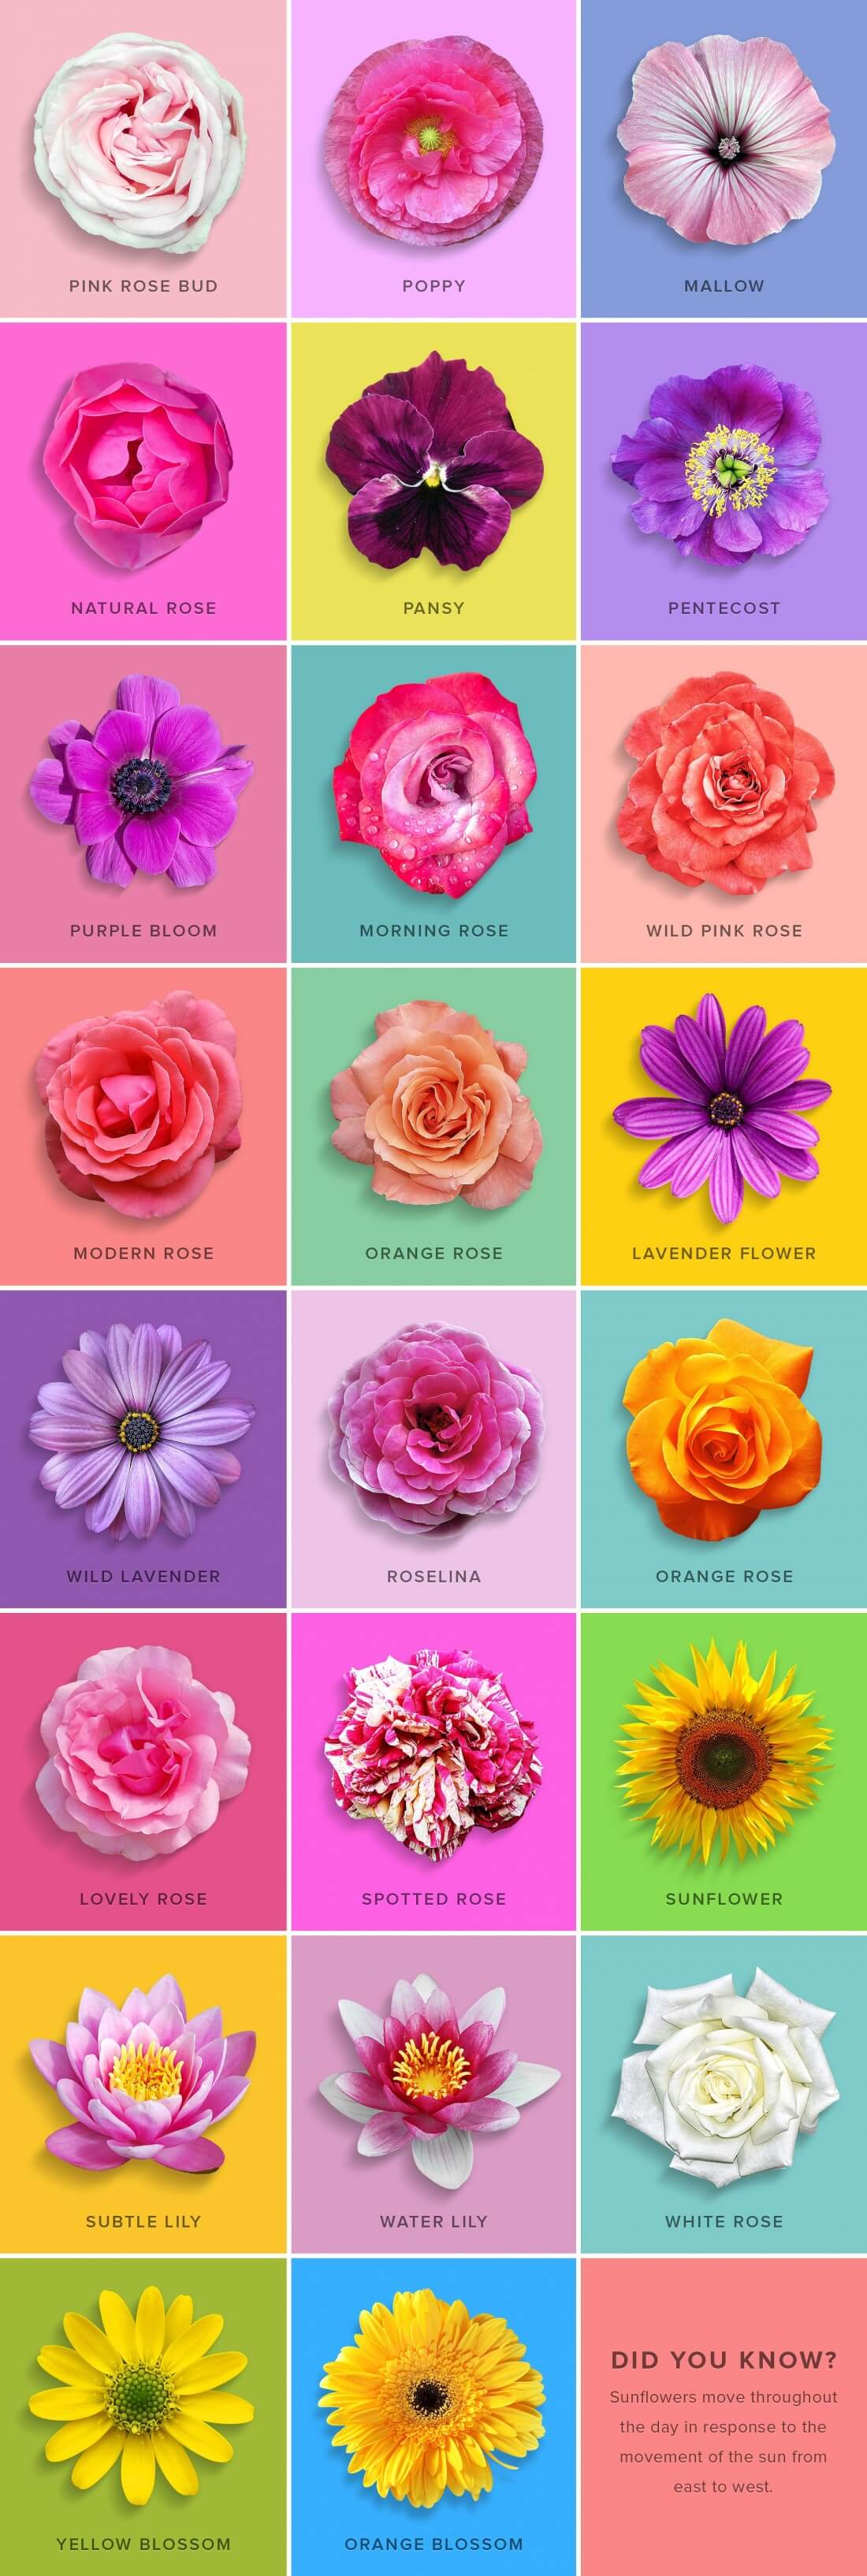 flower-design-collection-2-.jpg